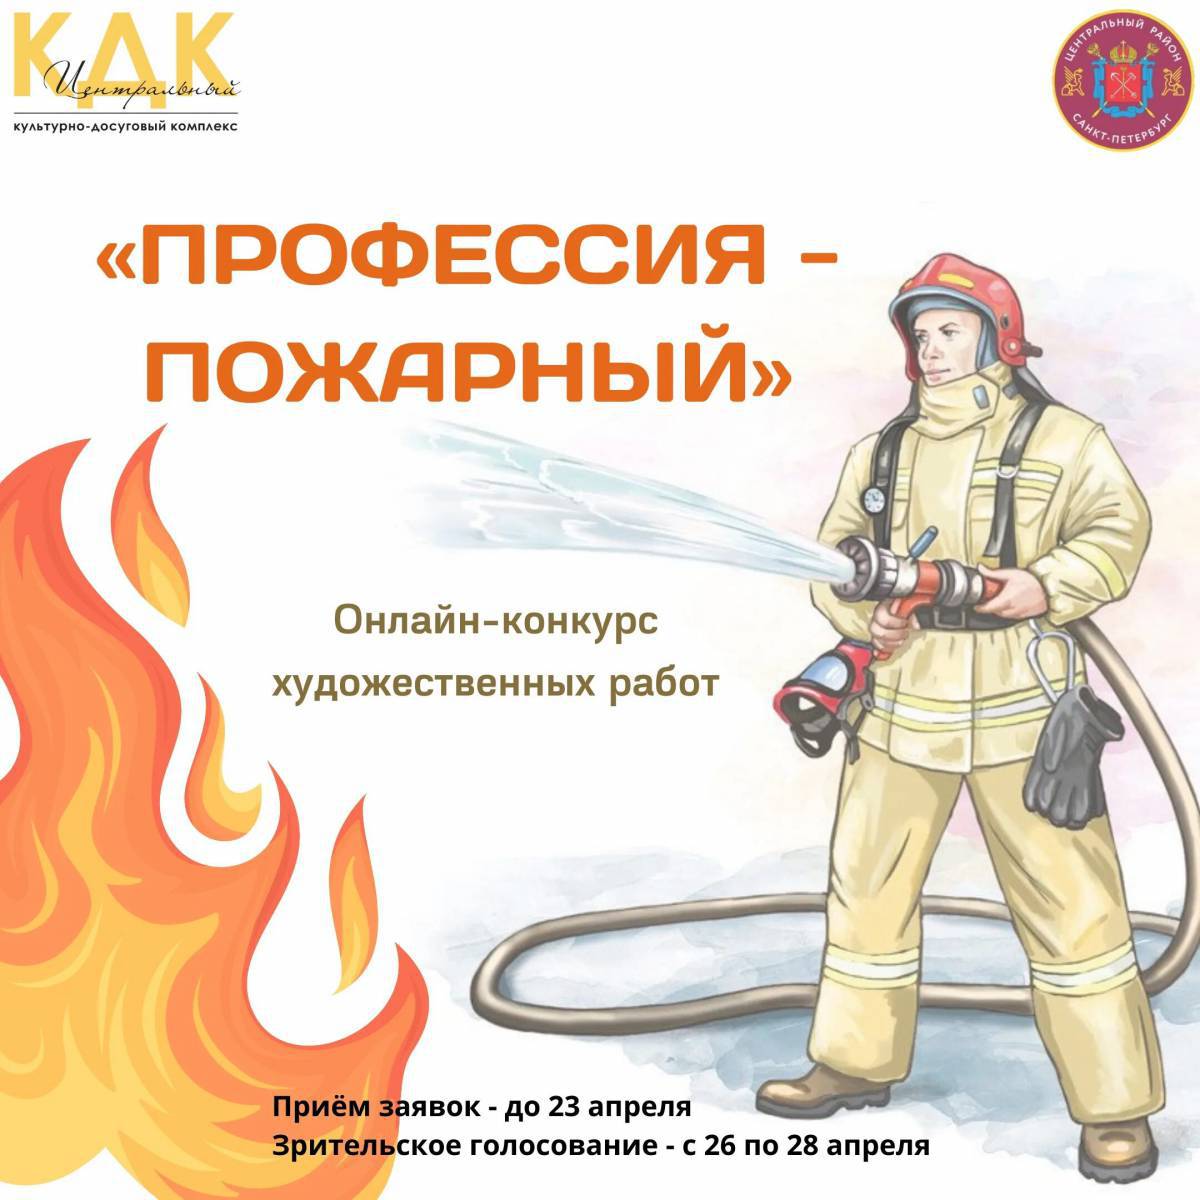 Пожарный профессия #29